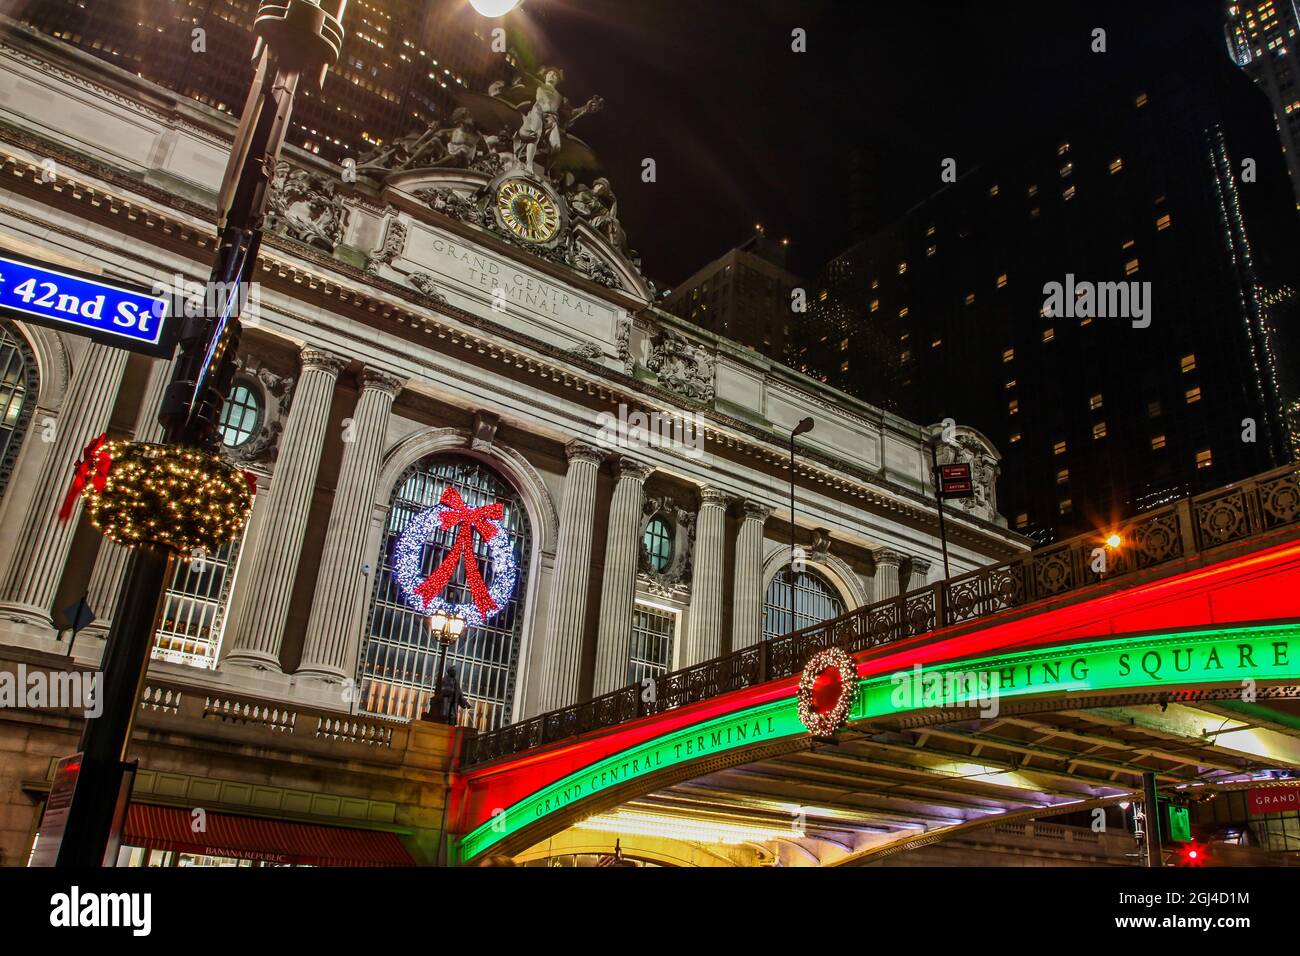 NEW YORK, NY, USA - 27 décembre 2018 : de belles soirées avec des lumières de rue près de Grand Central Terminal avec bâtiment Crysler à l'arrière. Banque D'Images